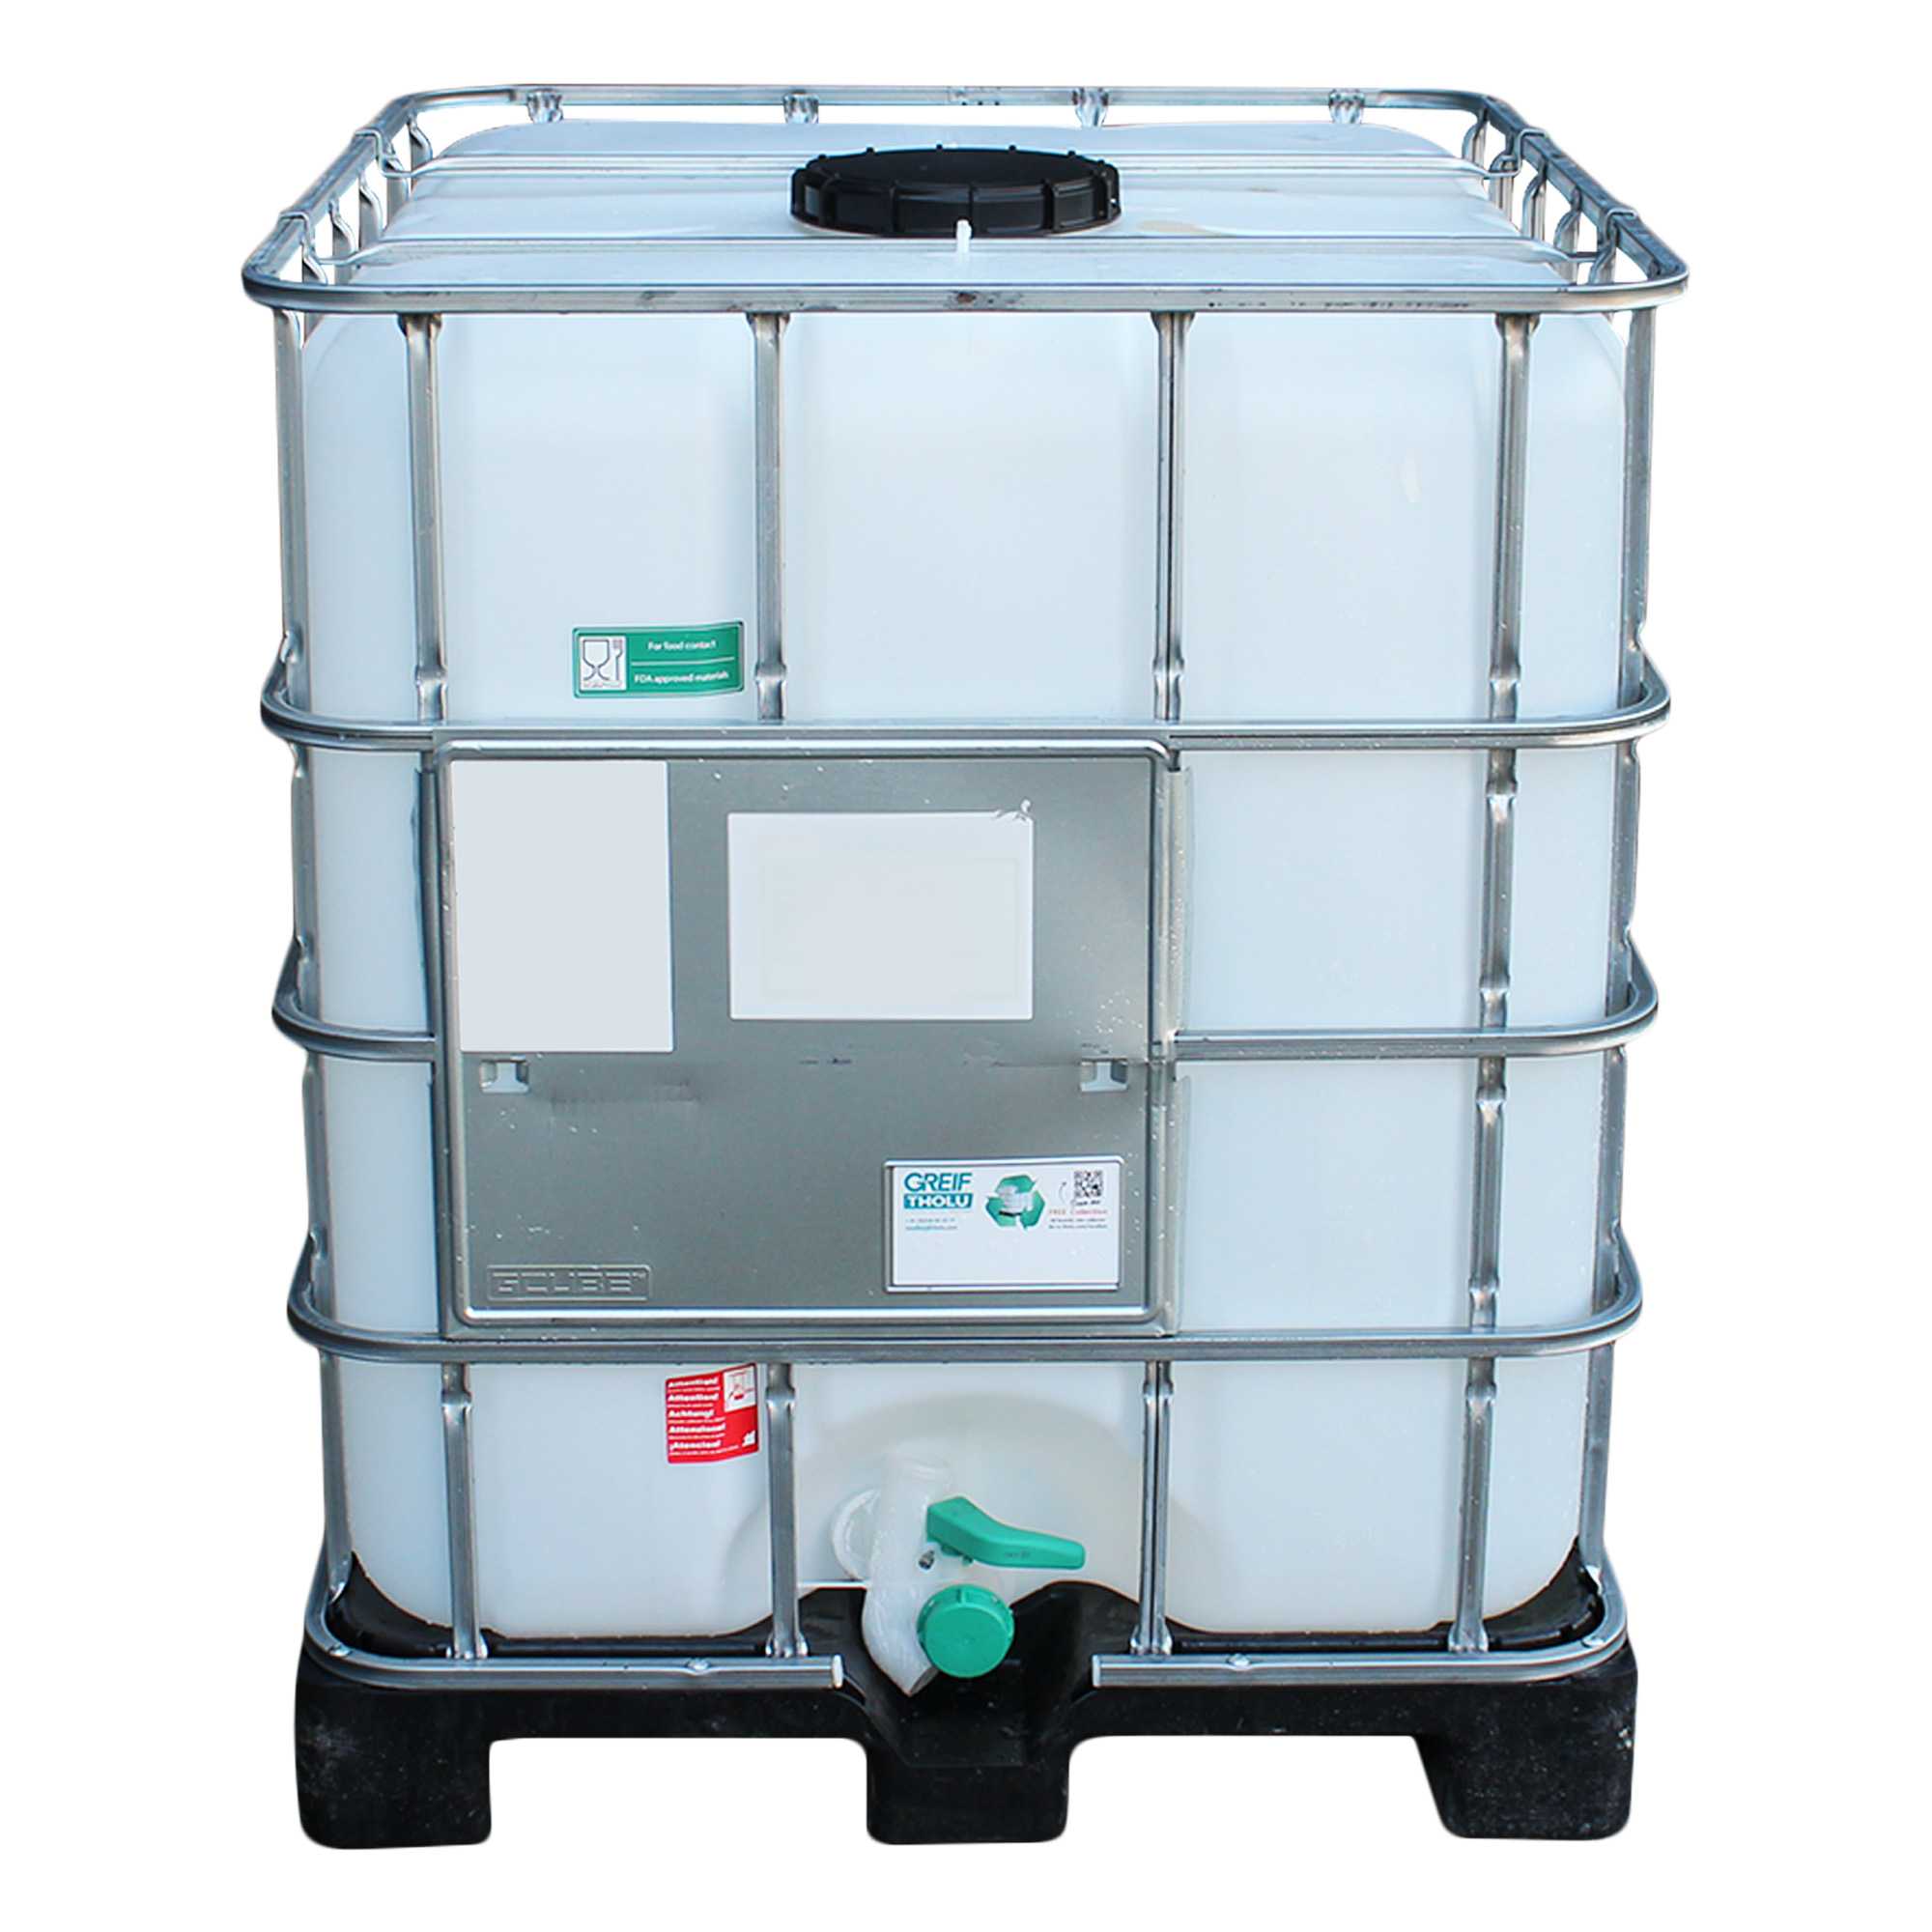 IBC Container 1000l auf Kunststoffpalette - gebraucht, restentleert, lebensm. Öl